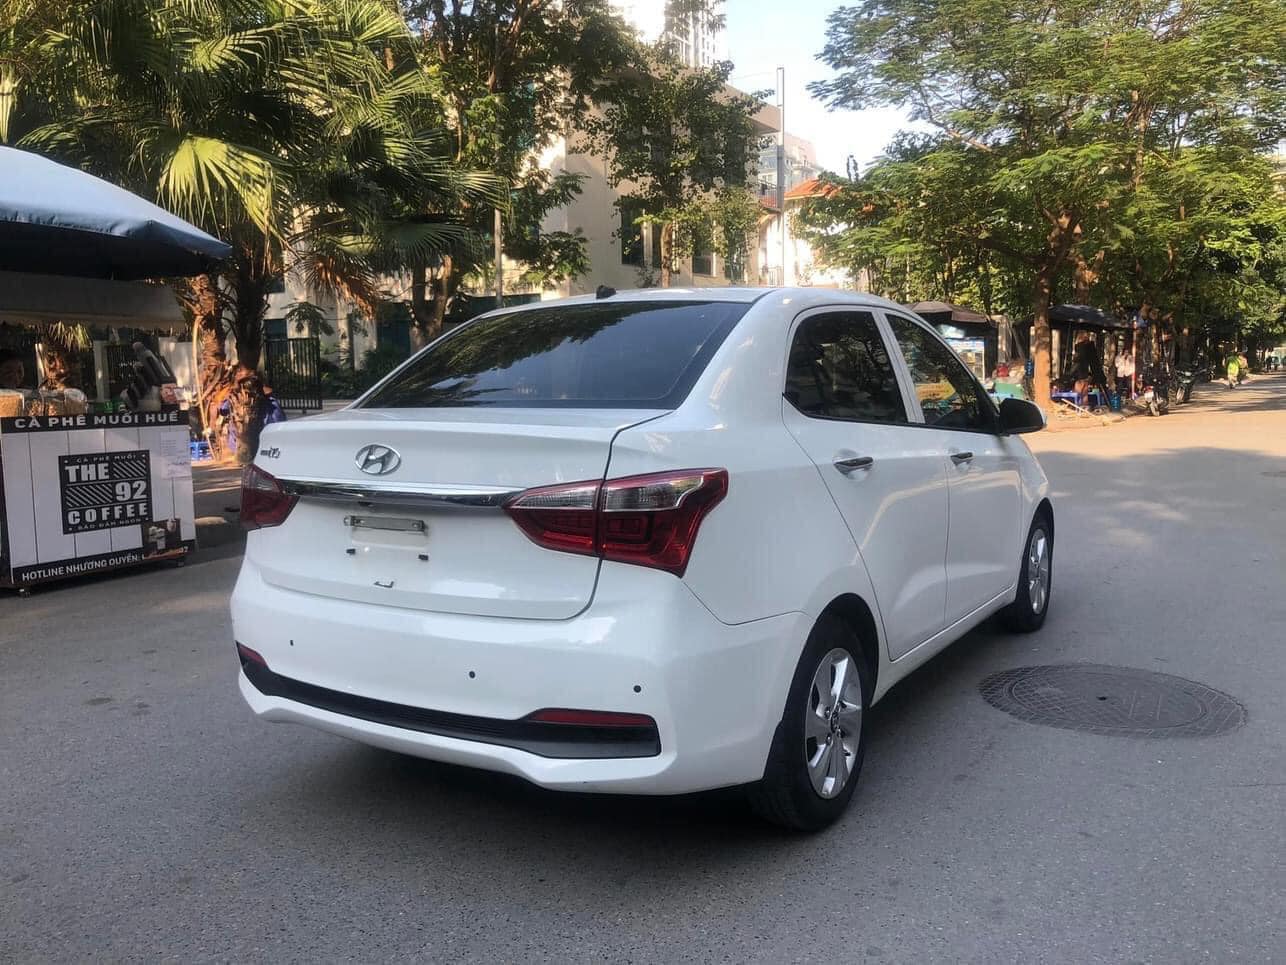 Xe quốc dân Hyundai Grand i10 liên tục khuynh đảo thị trường, giá sang tay chỉ 300 triệu đồng- Ảnh 49.